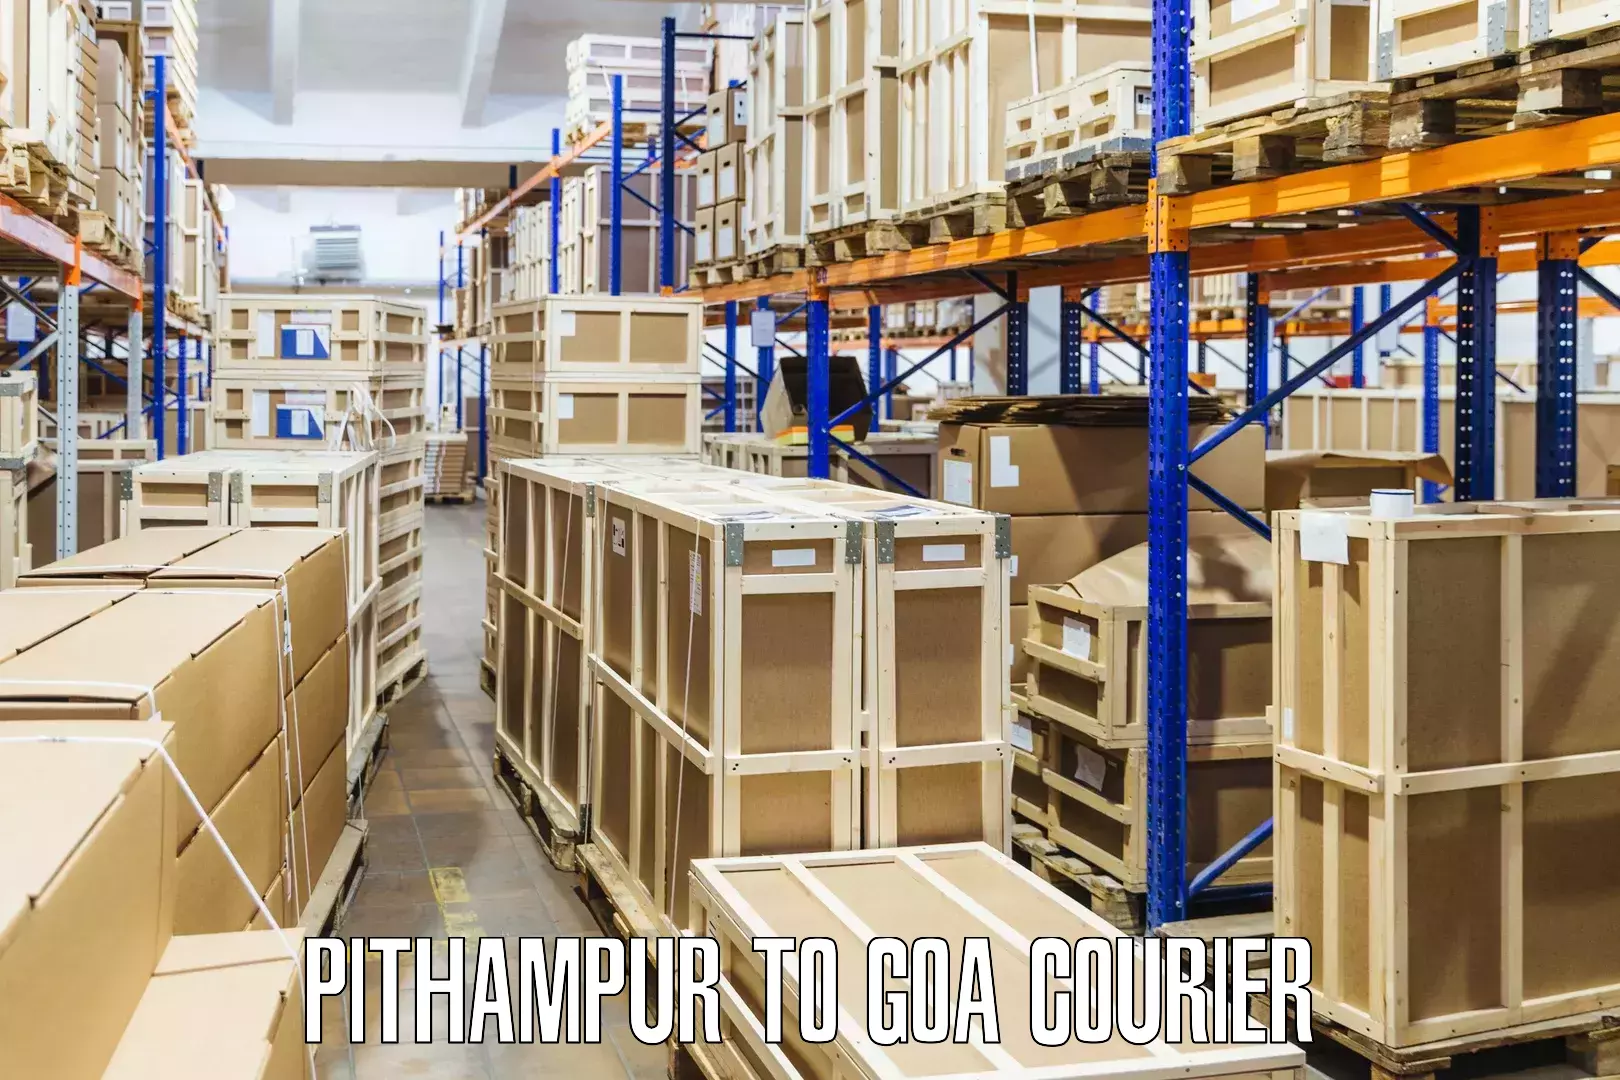 Courier membership in Pithampur to Panjim